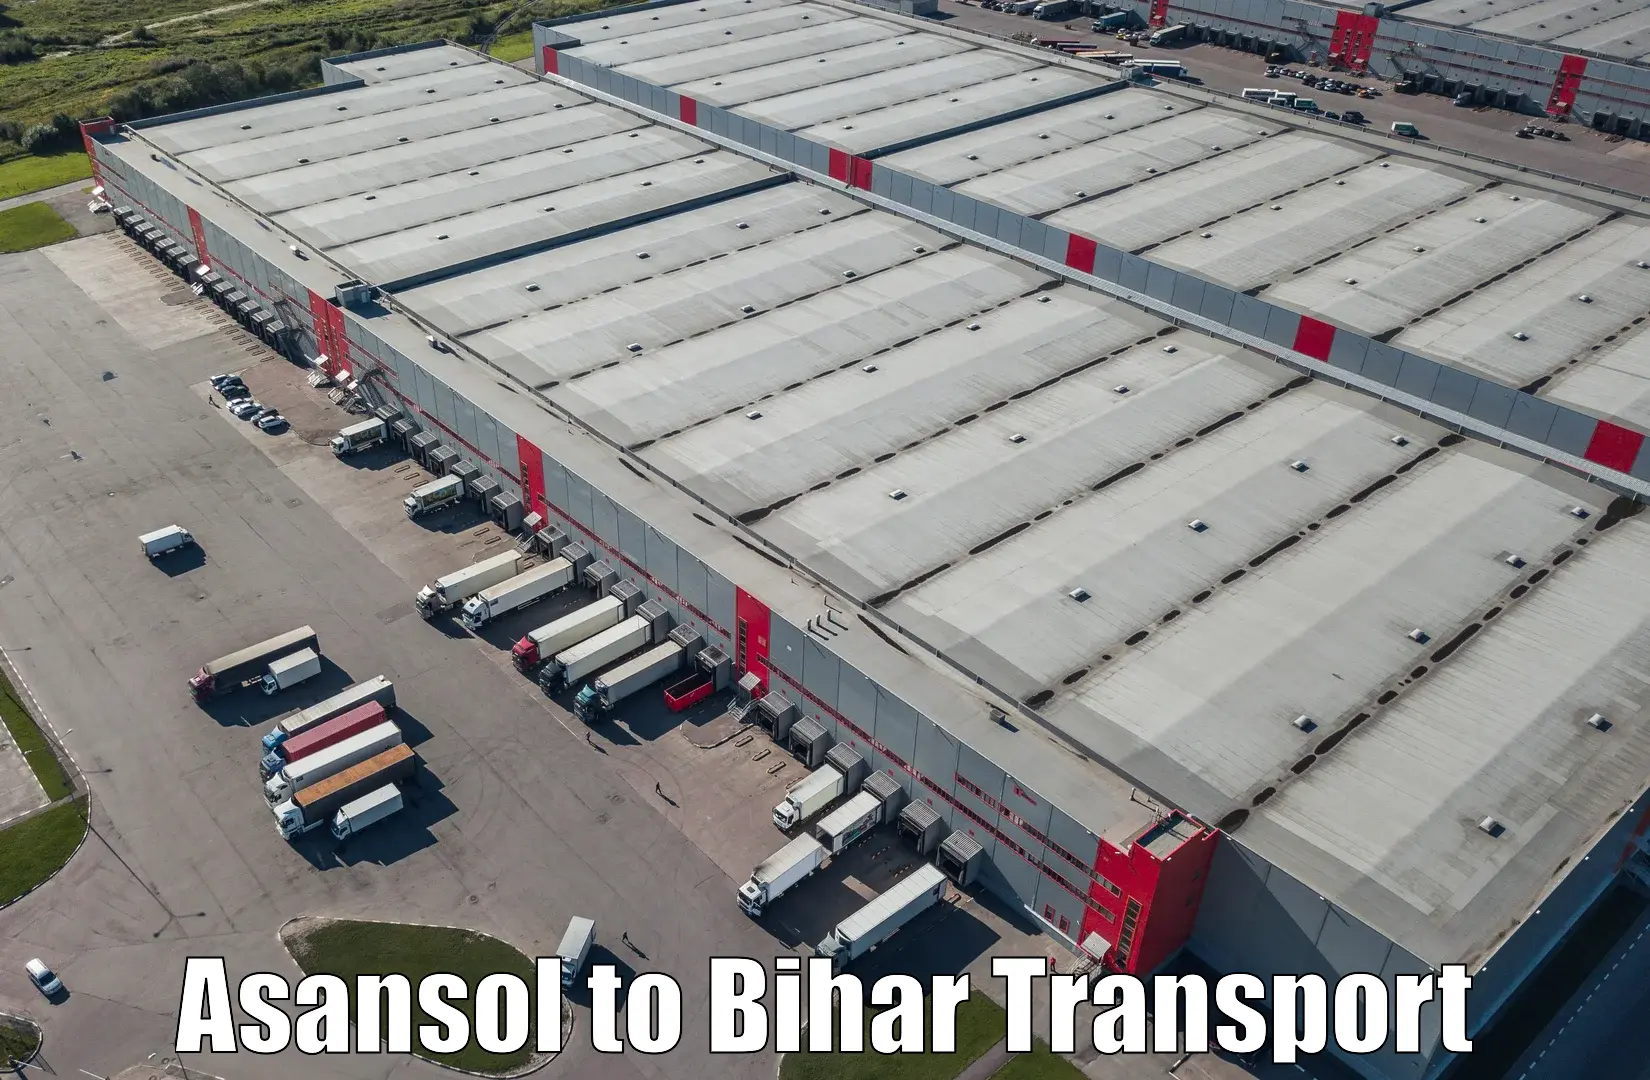 Domestic transport services Asansol to Banmankhi Bazar